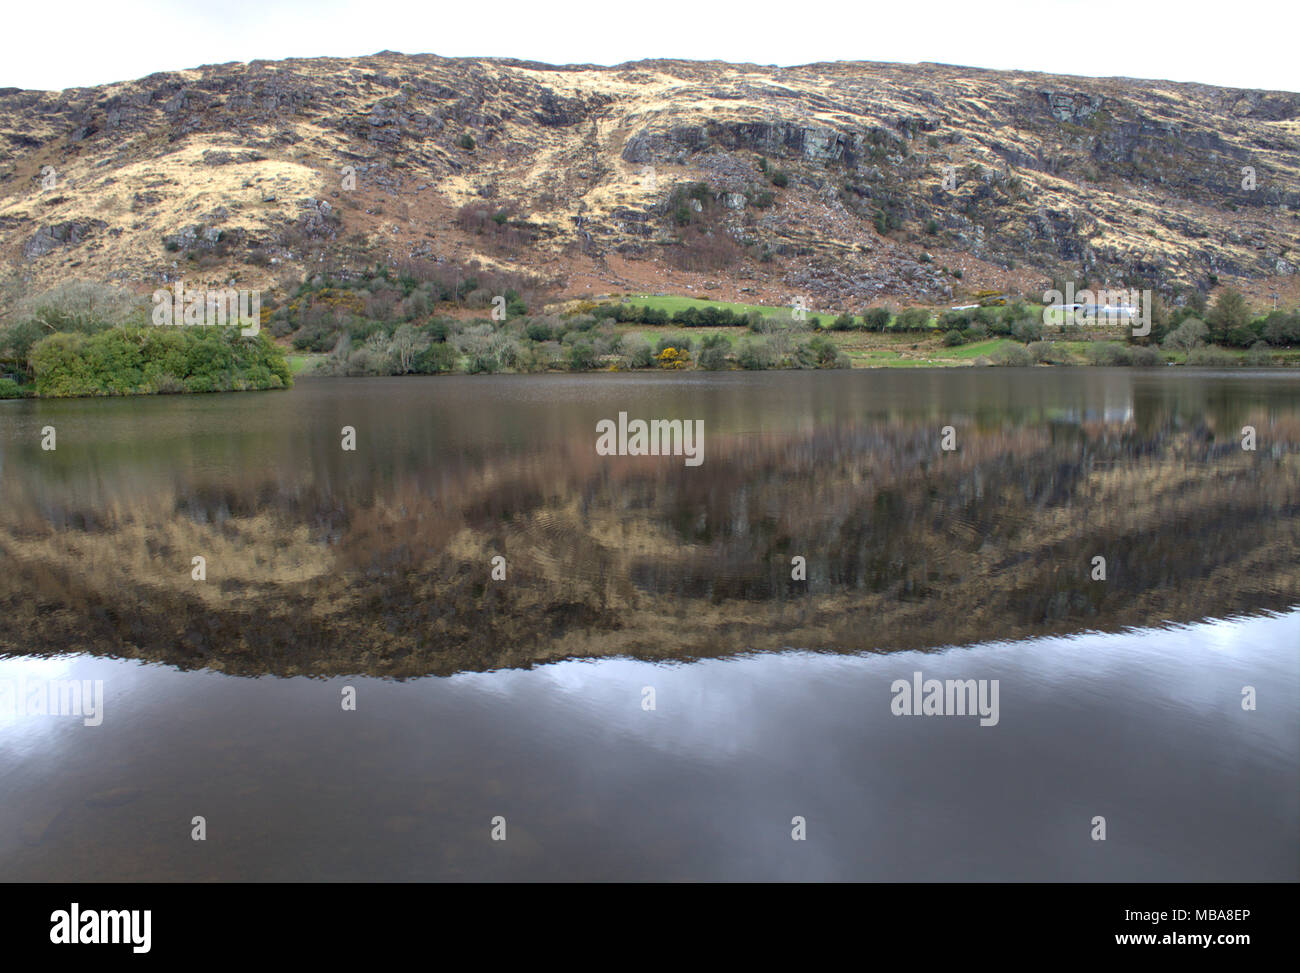 Die Hügel rund um den See bei Gougane Barra, Irland in den noch dunklen Wasser des Sees spiegelt. Ein beliebtes Ziel für Touristen und Urlauber. Stockfoto